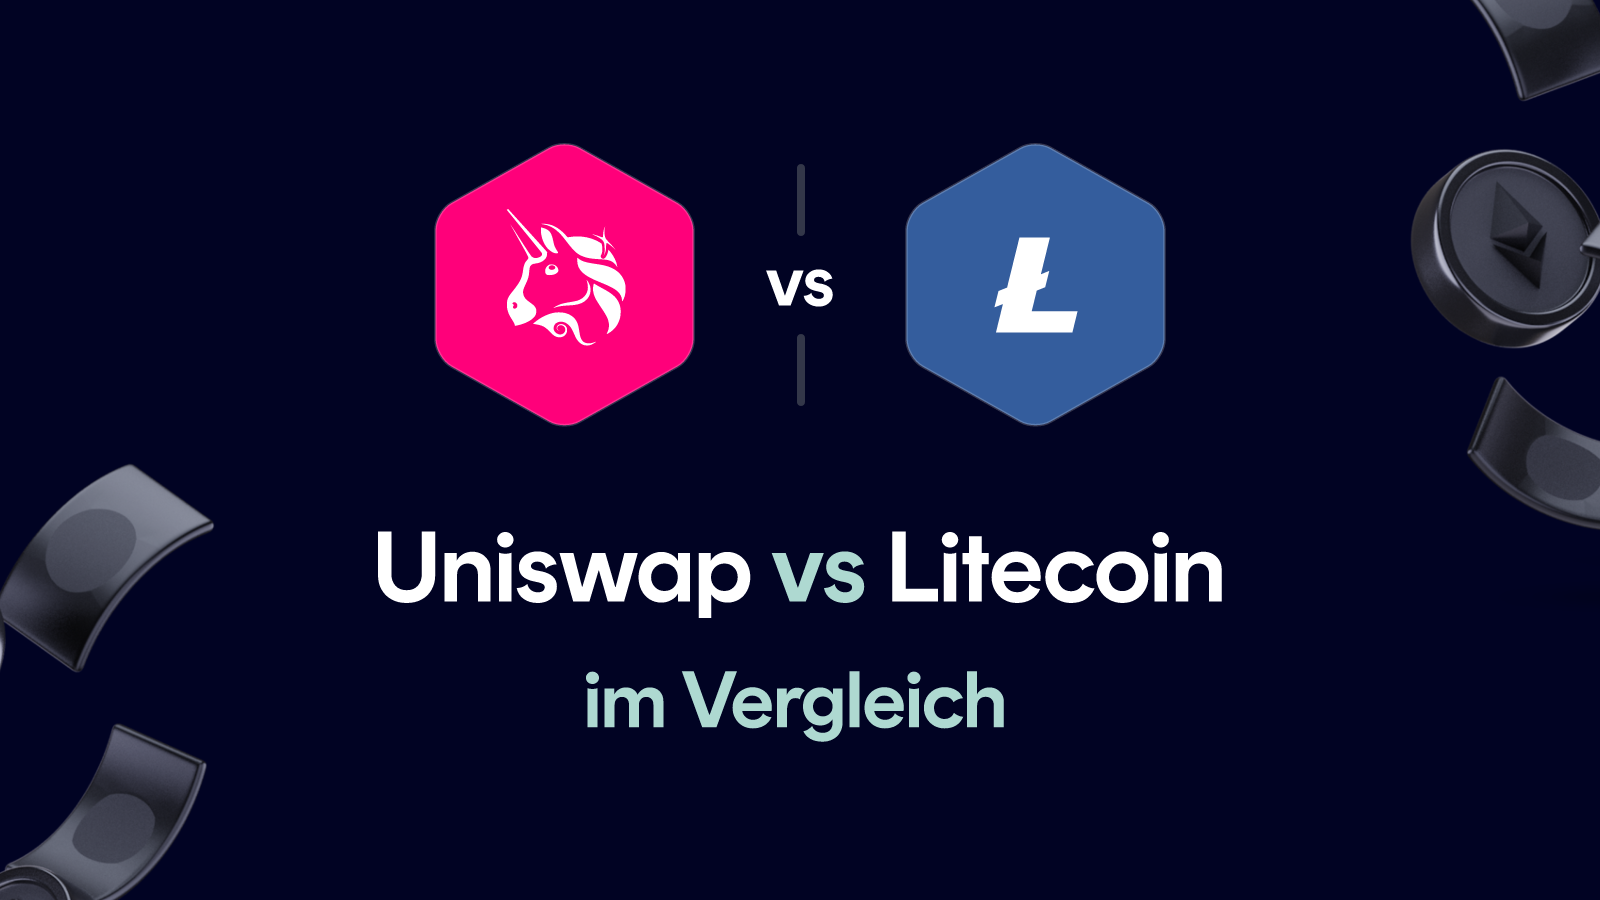 Uniswap vs Litecoin